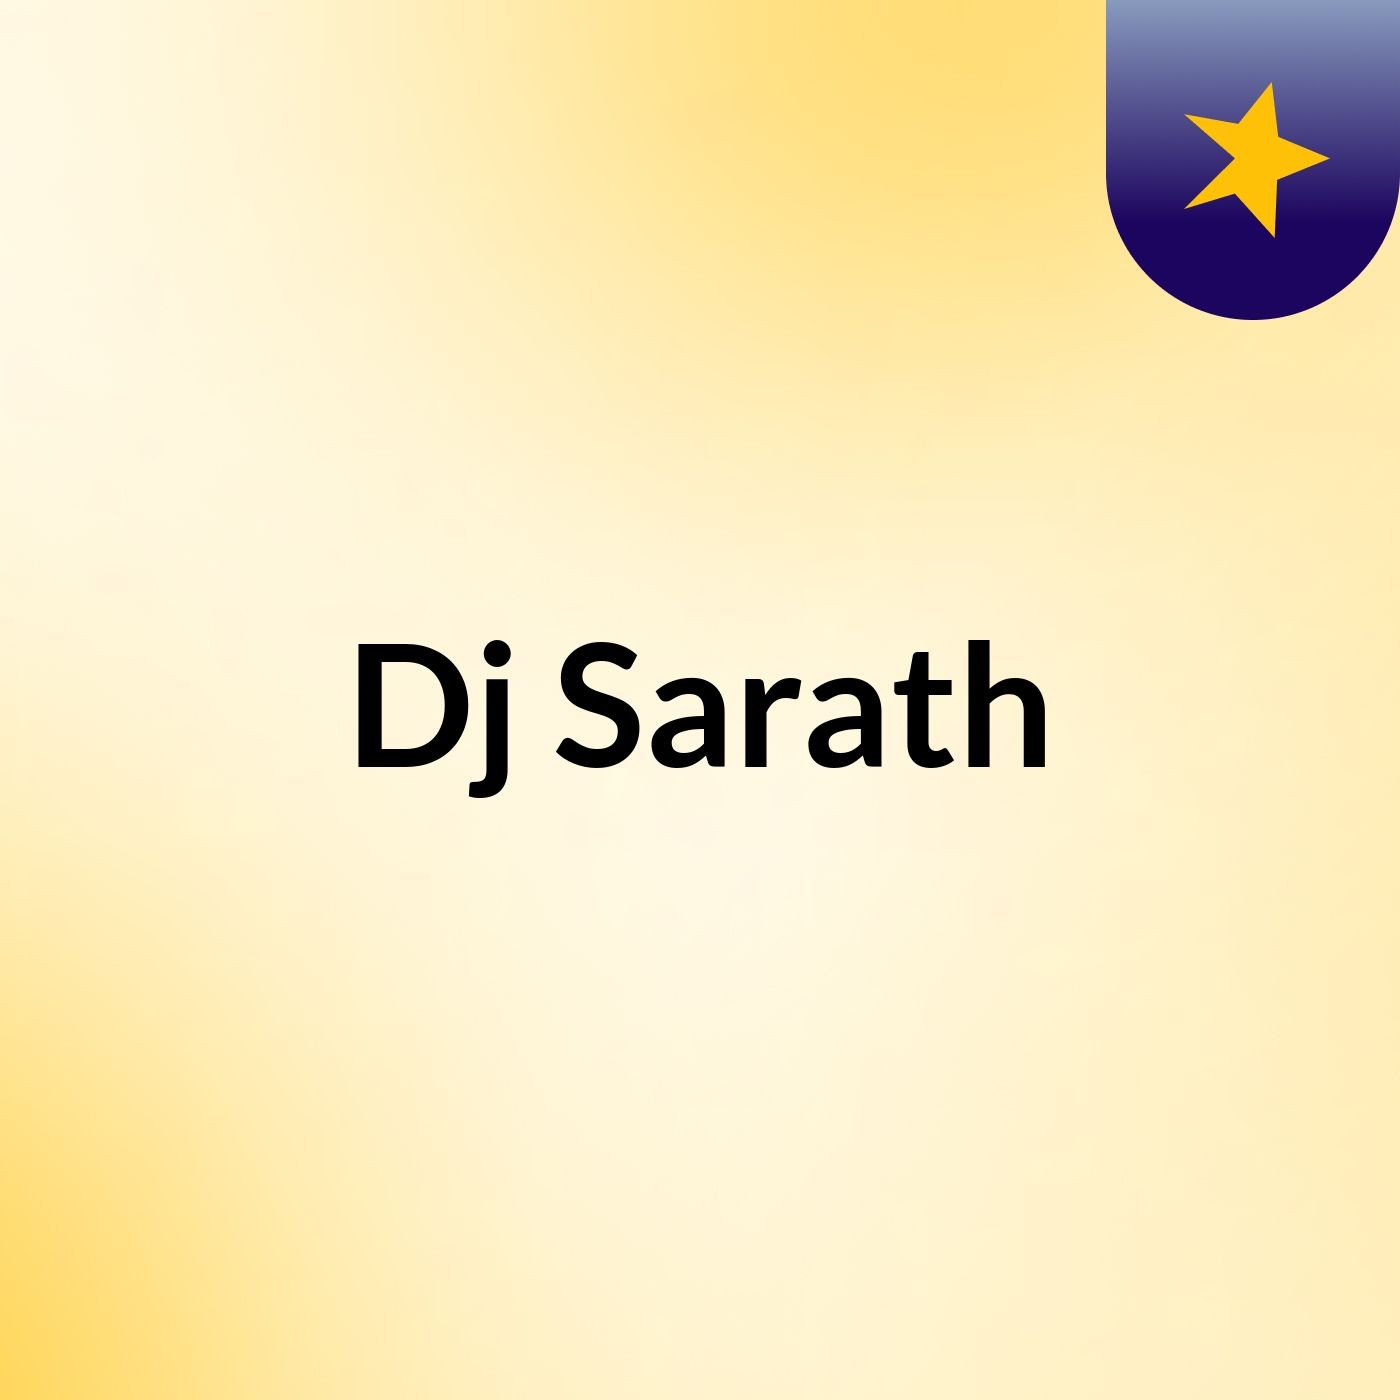 Episode 2 - Dj Sarath